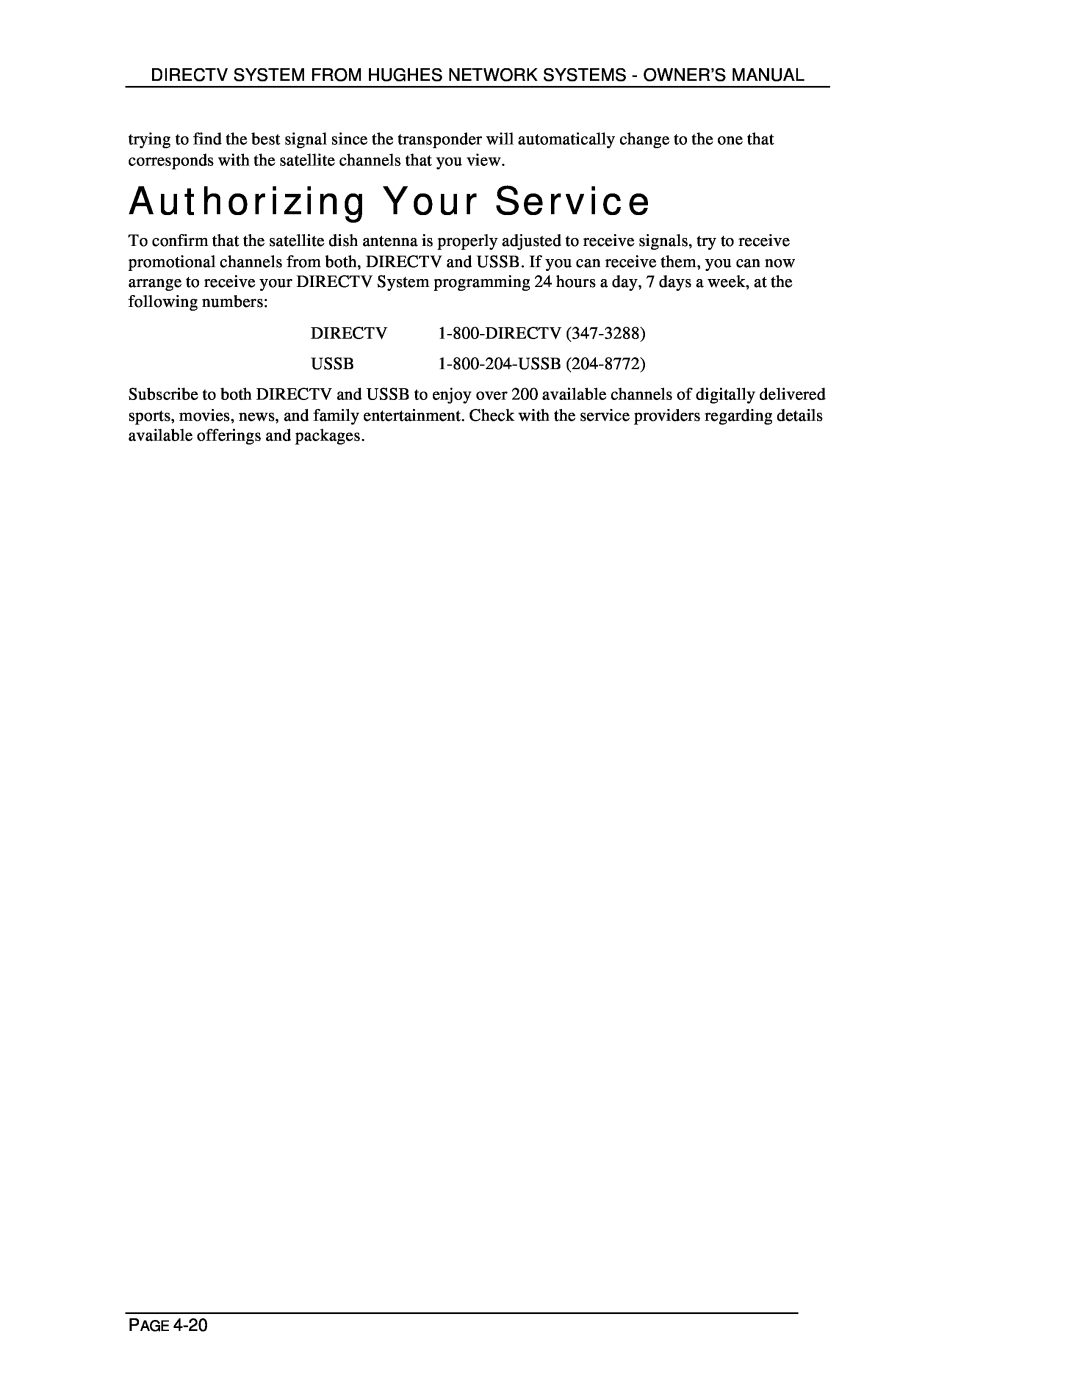 DirecTV HIRD-D01, HIRD-D11 owner manual Authorizing Your Service 